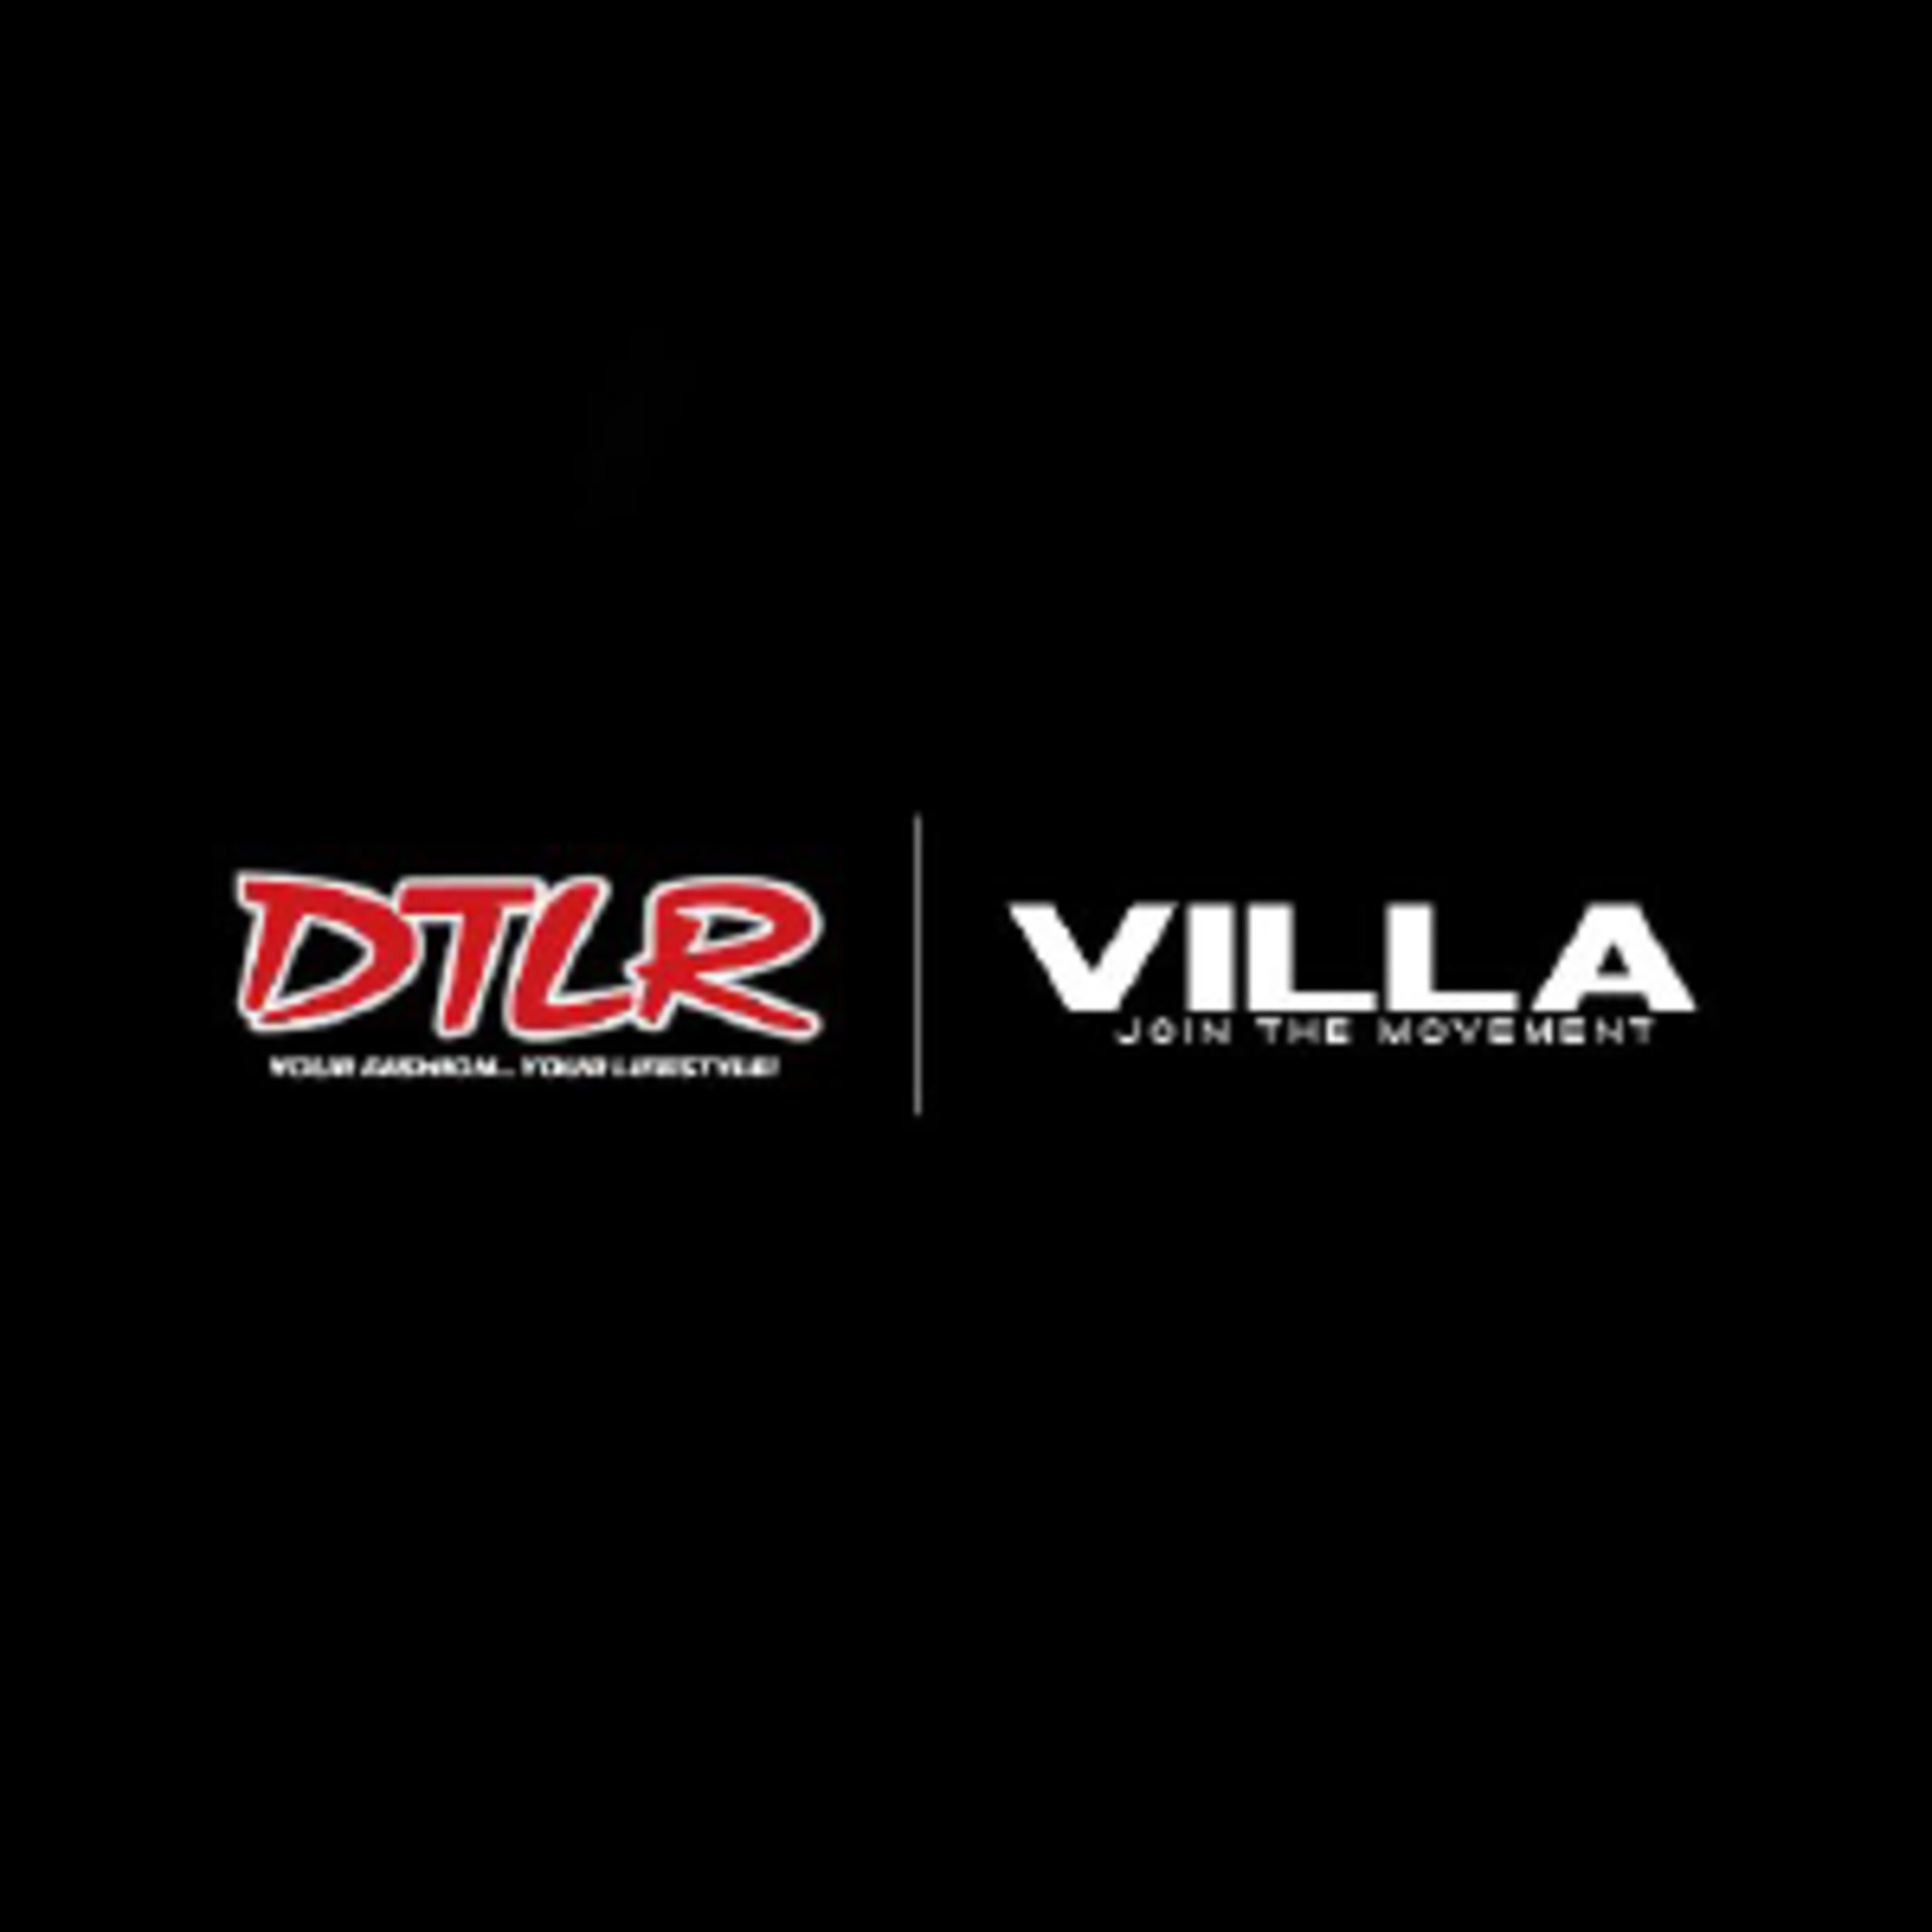 DTLR-VillaCode